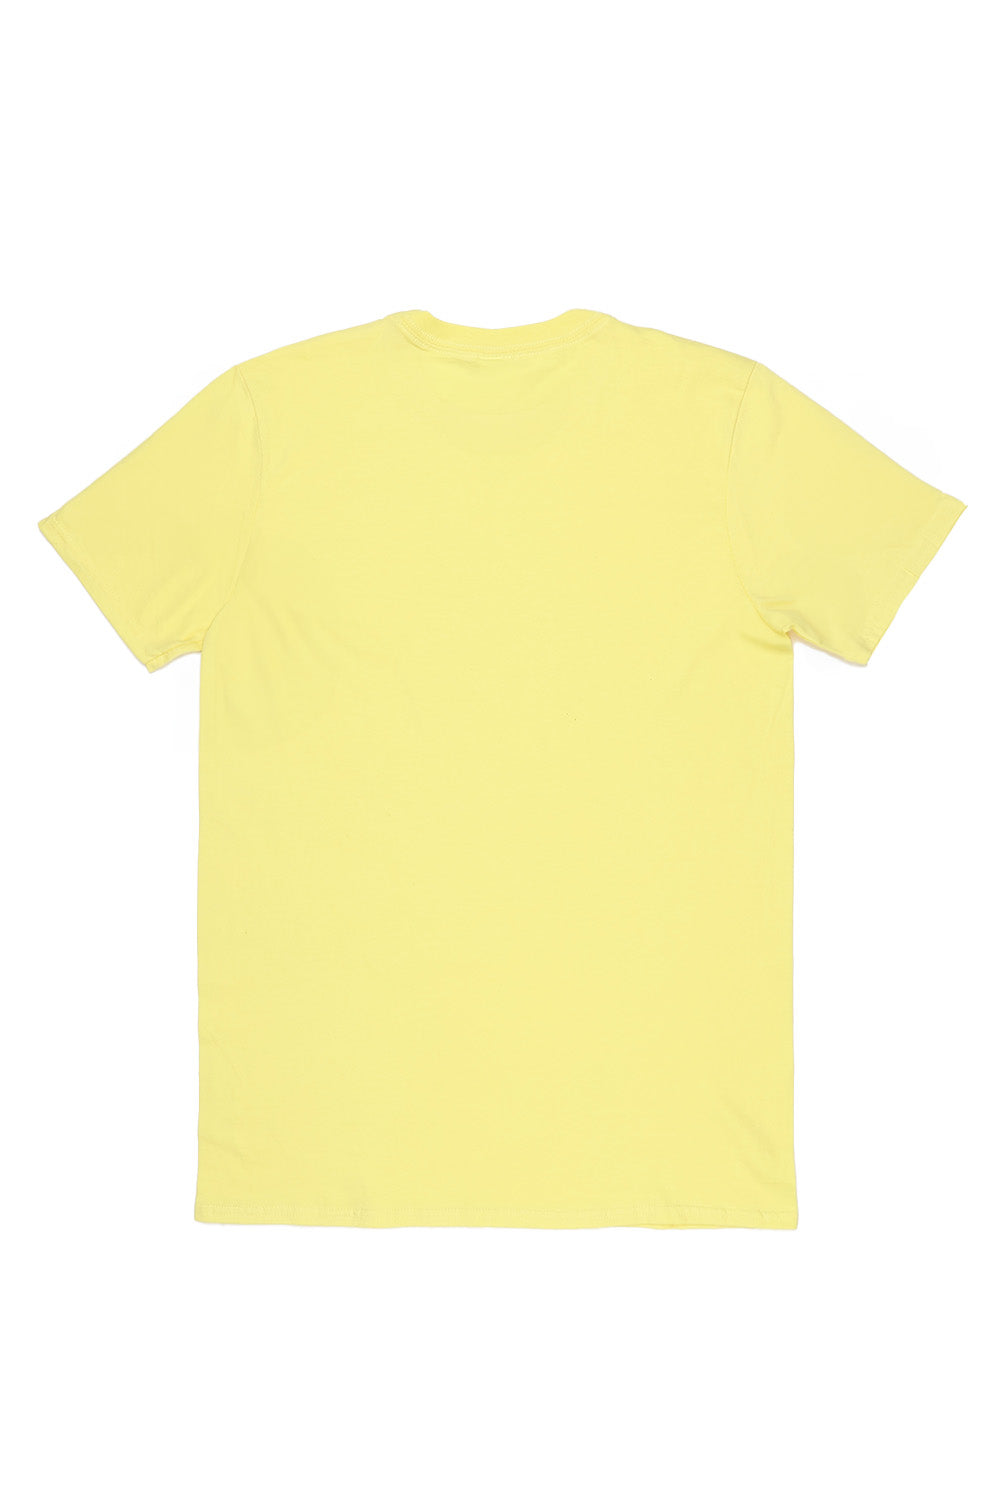 New York T-Shirt in Yellow (Custom Packs)